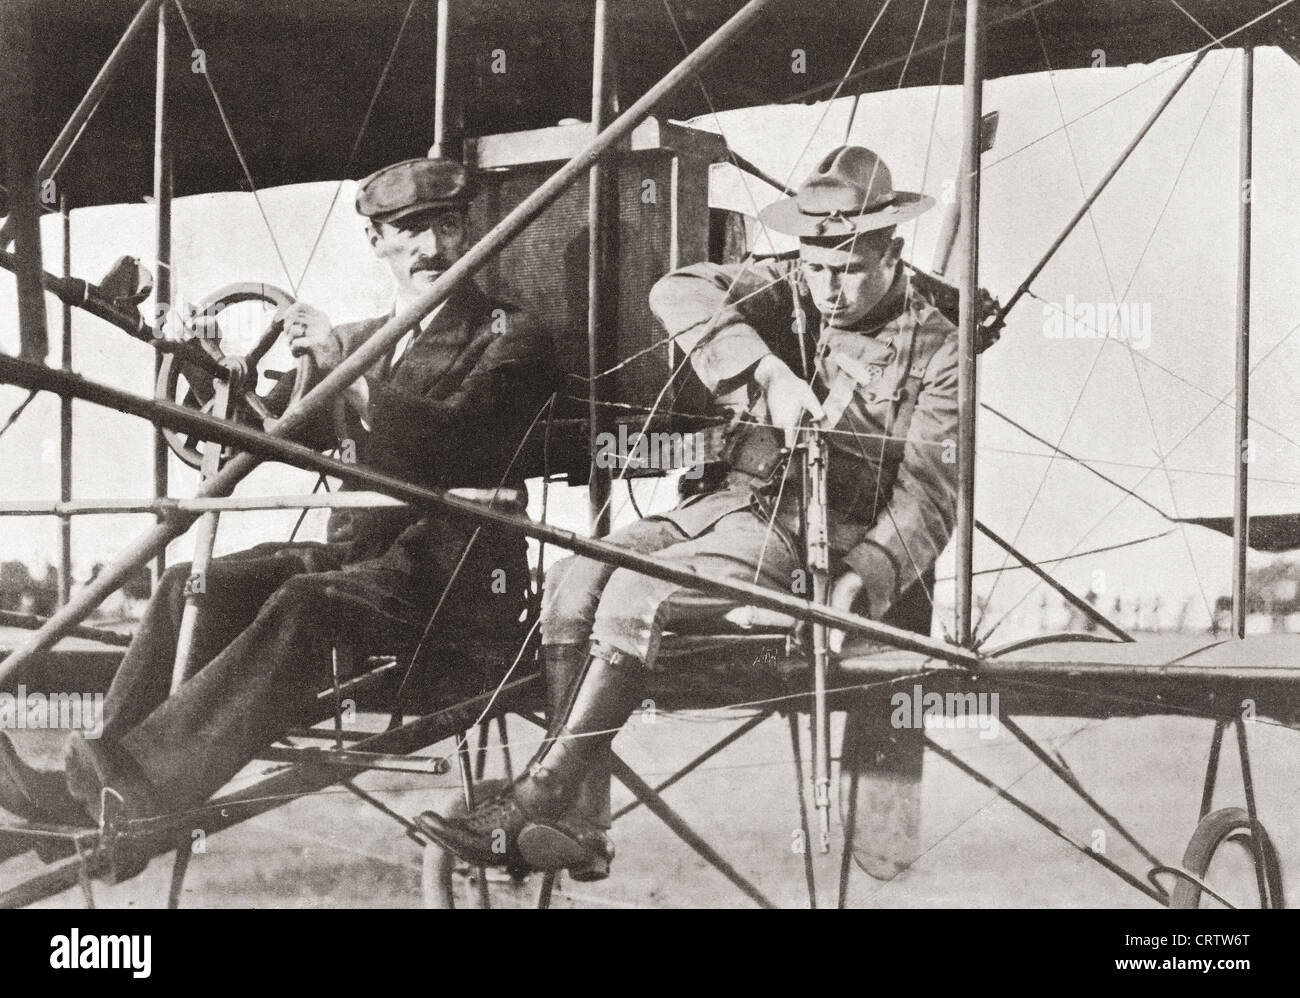 Luftkrieg im ersten Weltkrieg. Flugzeug für den Feind überfallen. Aus dem Jahr 1914 illustriert. Stockfoto